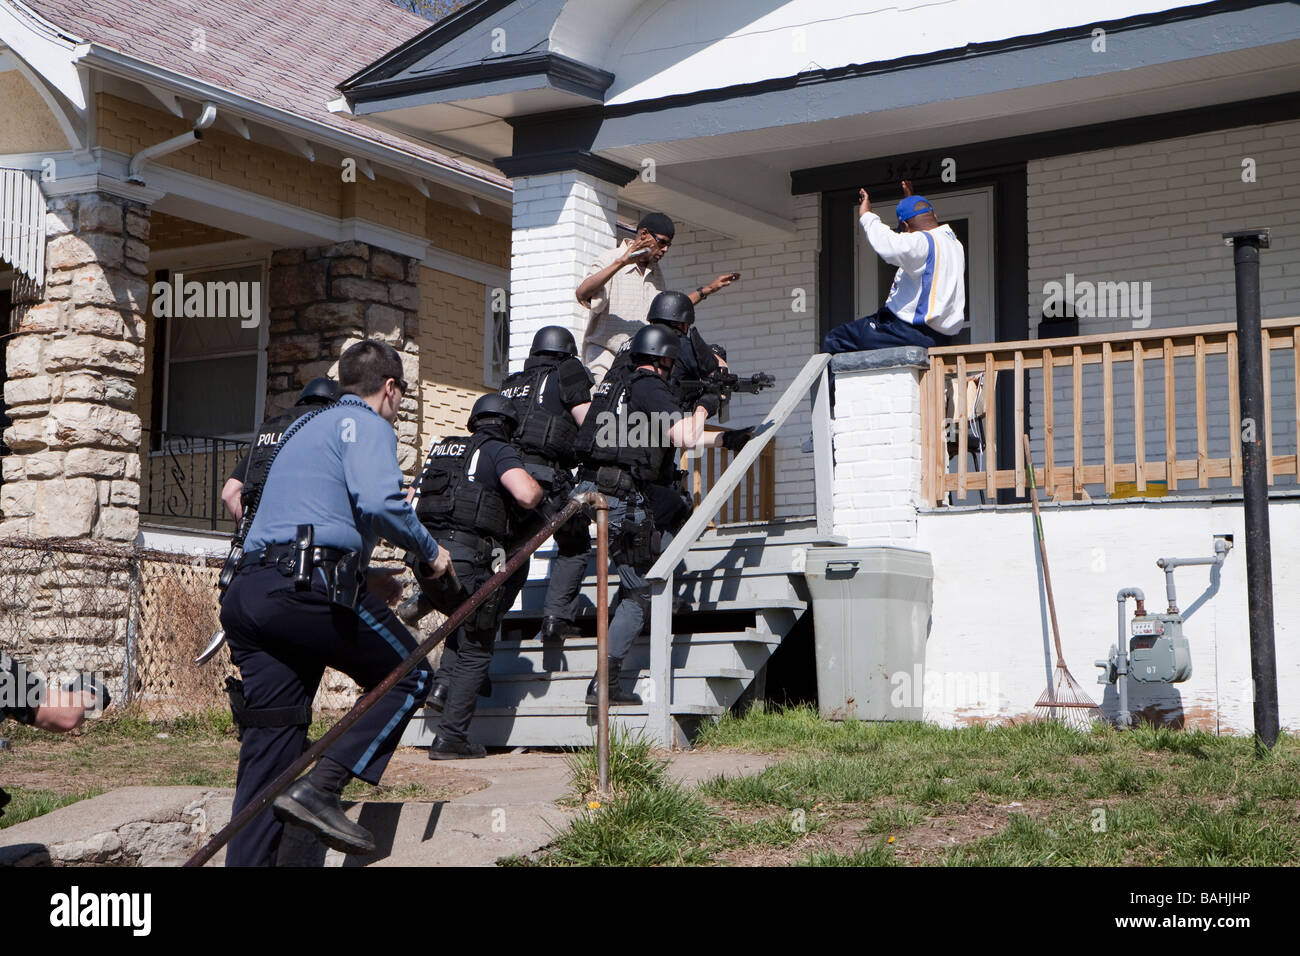 Polizei taktische Team einen hohes Risiko Droge-in Verbindung stehenden Durchsuchungsbefehl in Kansas City, Missouri Straße Drogen Einheit/TAC SWAT dienen. Stockfoto